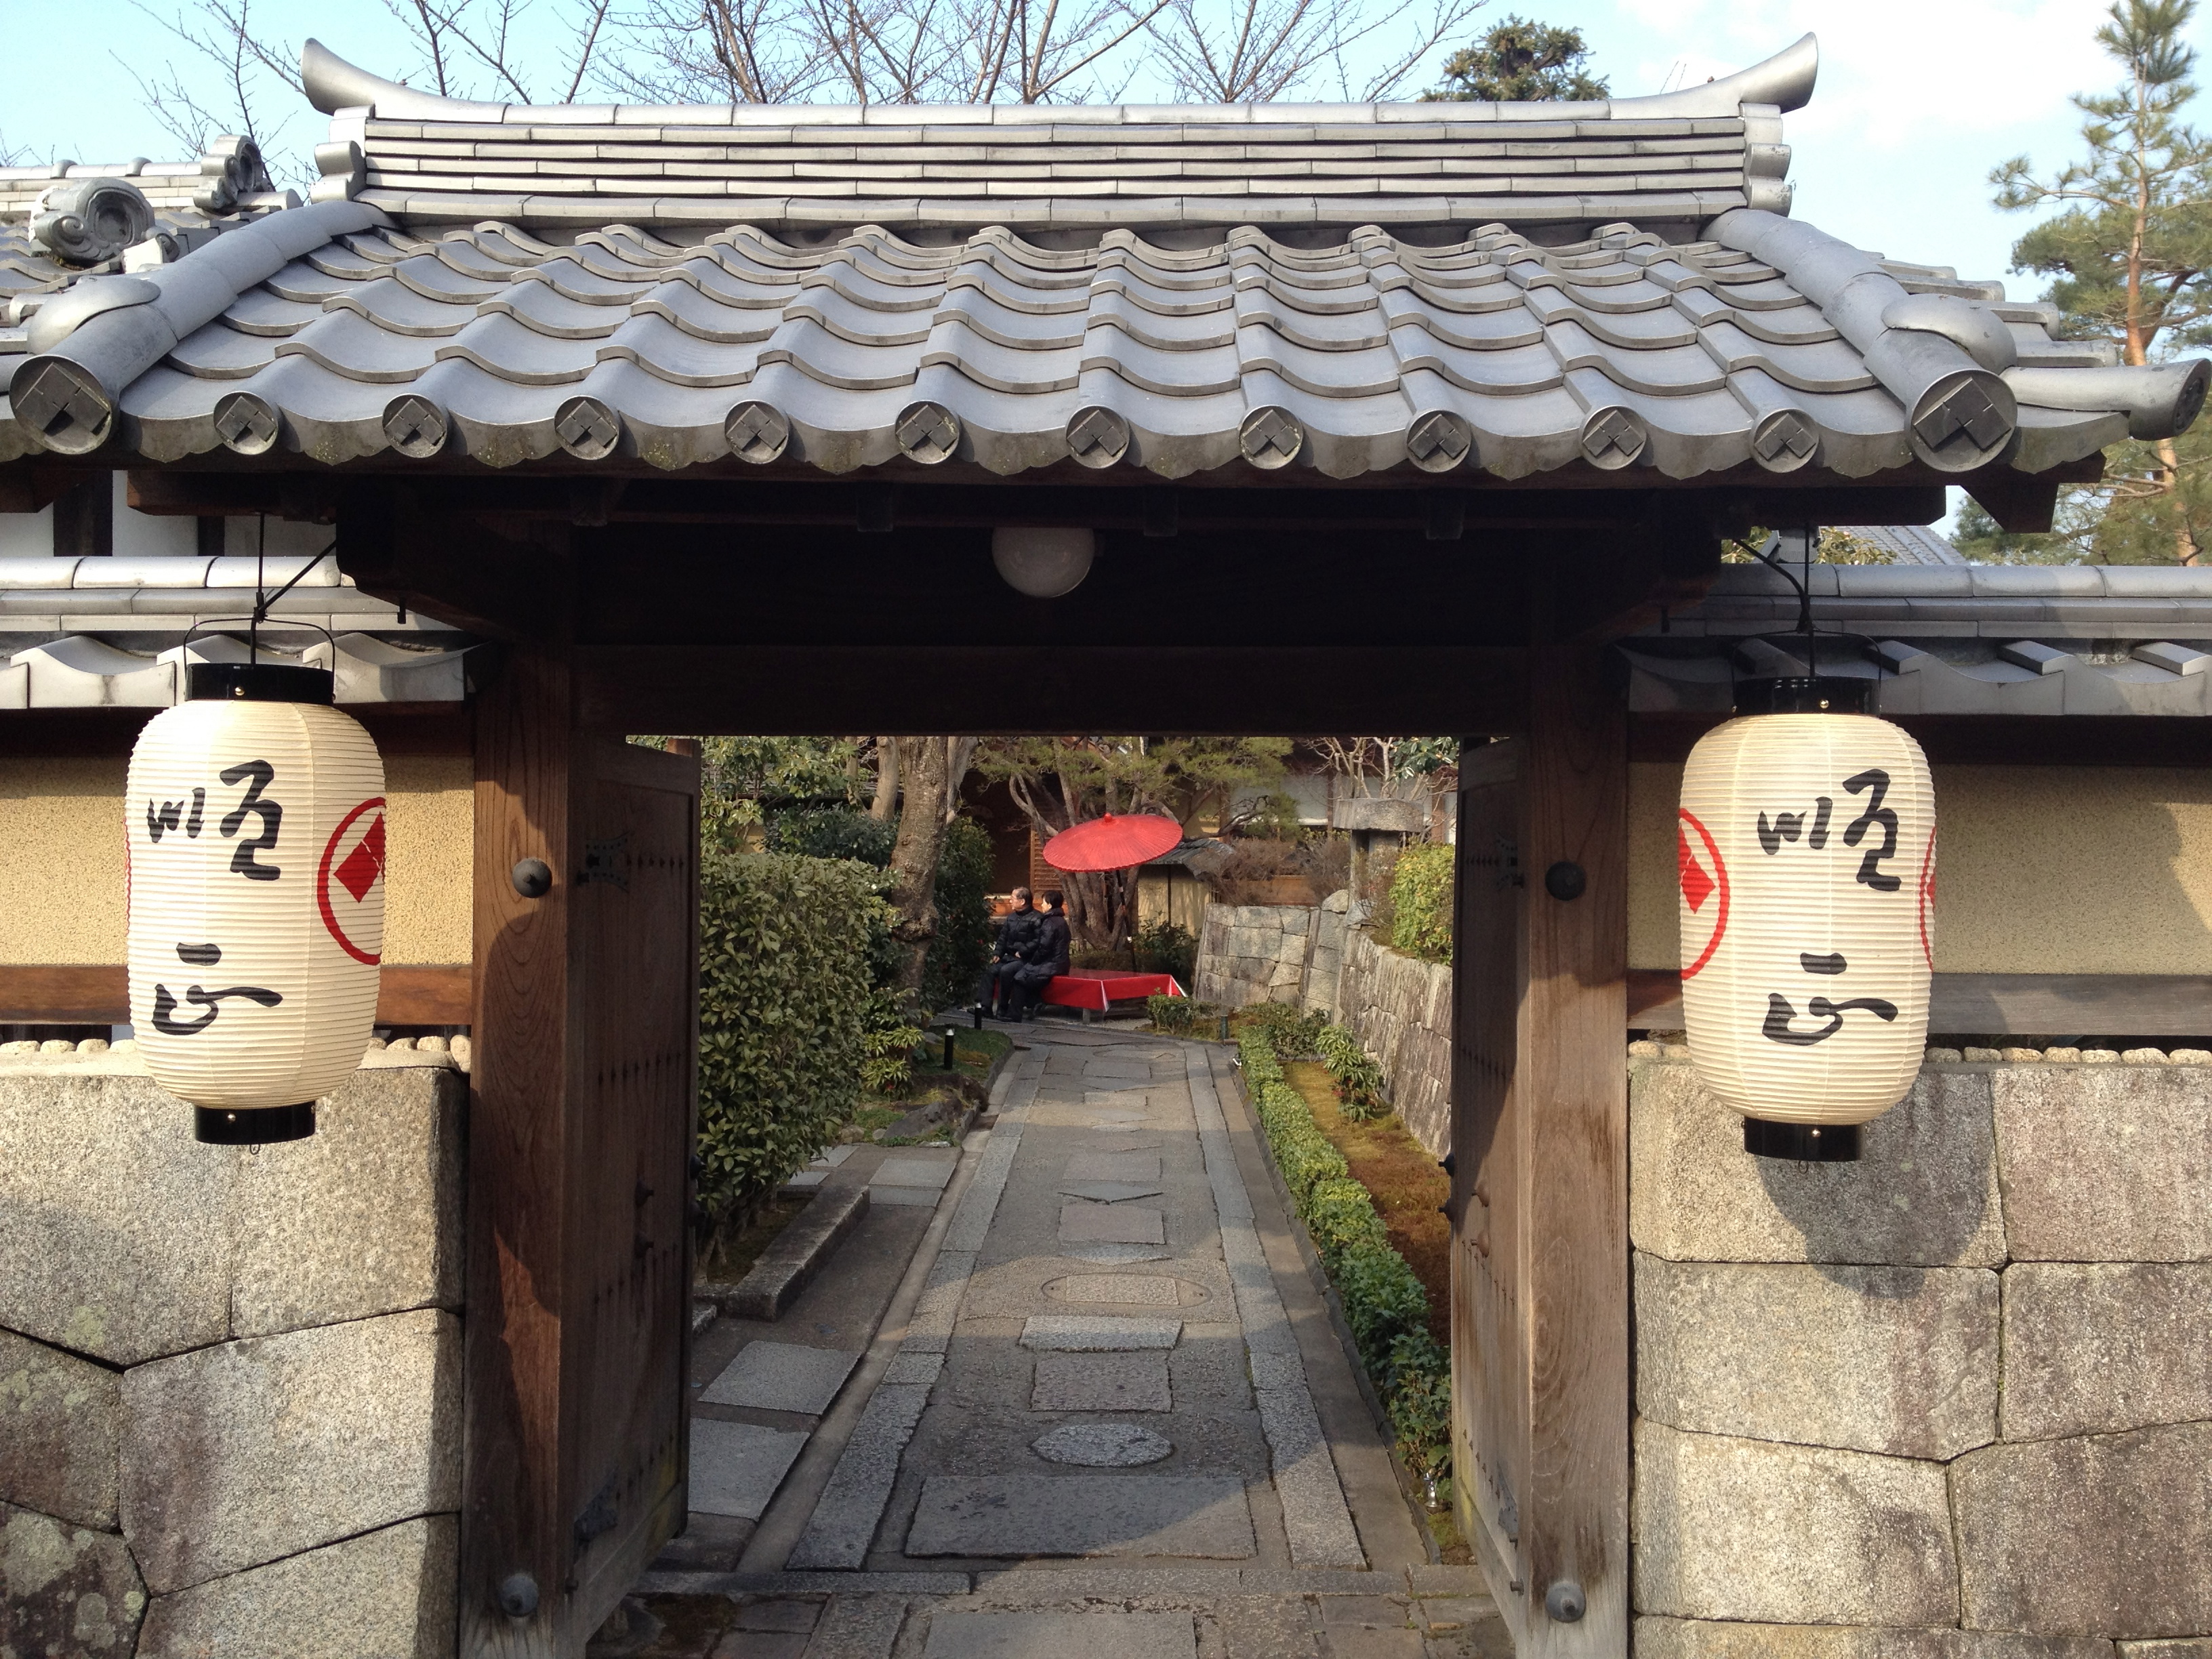 ここでしか味わえない空間で頂く「京都」のランチおすすめランキング